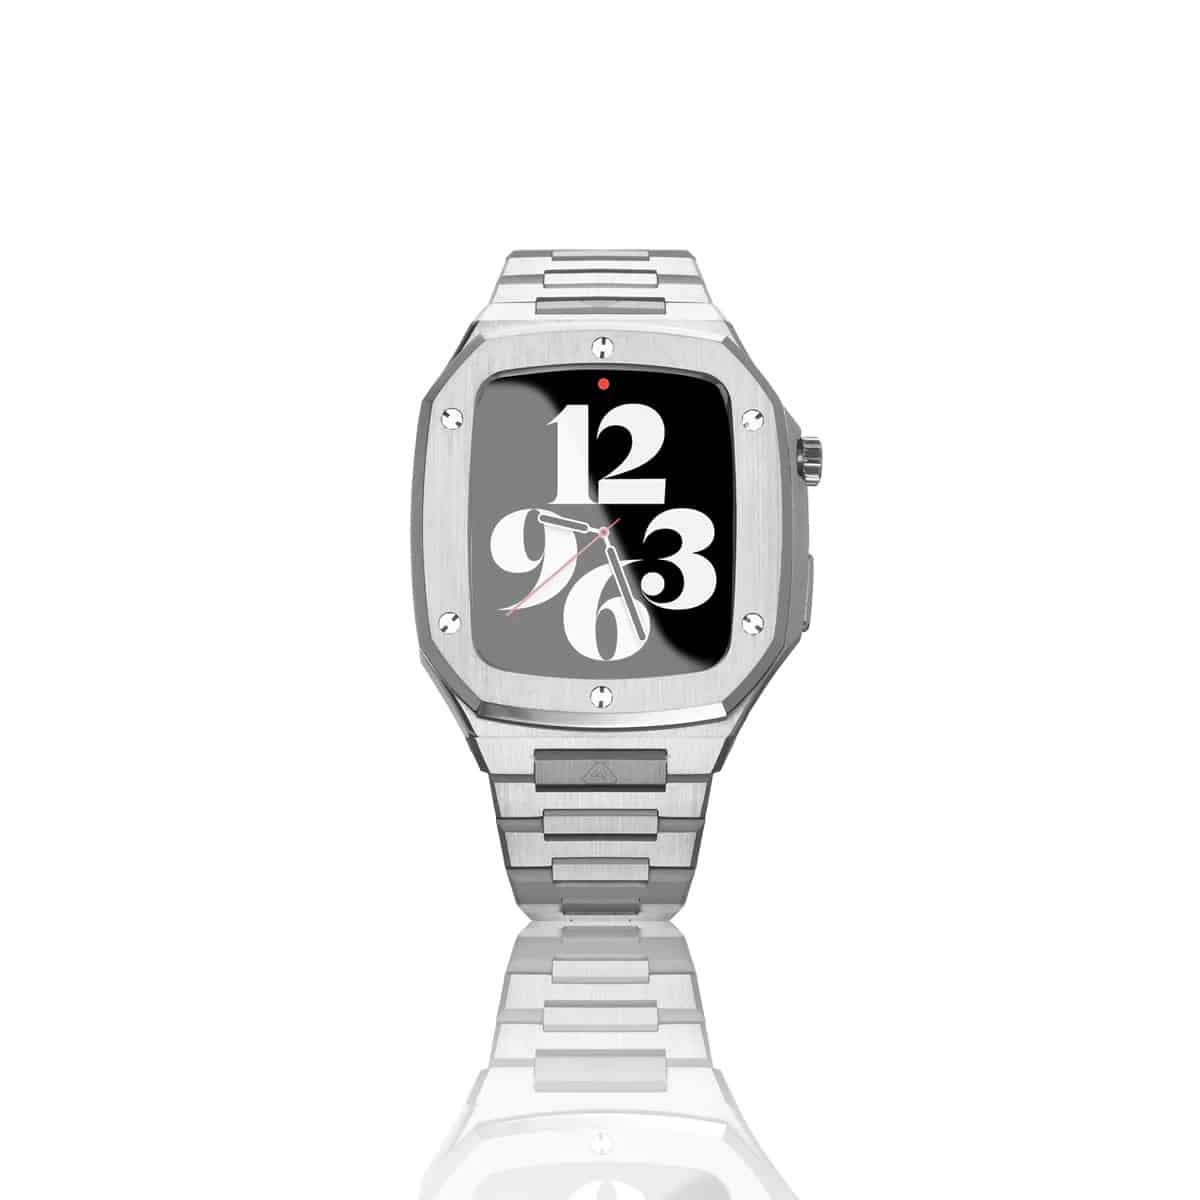 "Jeliel" stainless steel luxury Apple Watch case by Serafino luxury